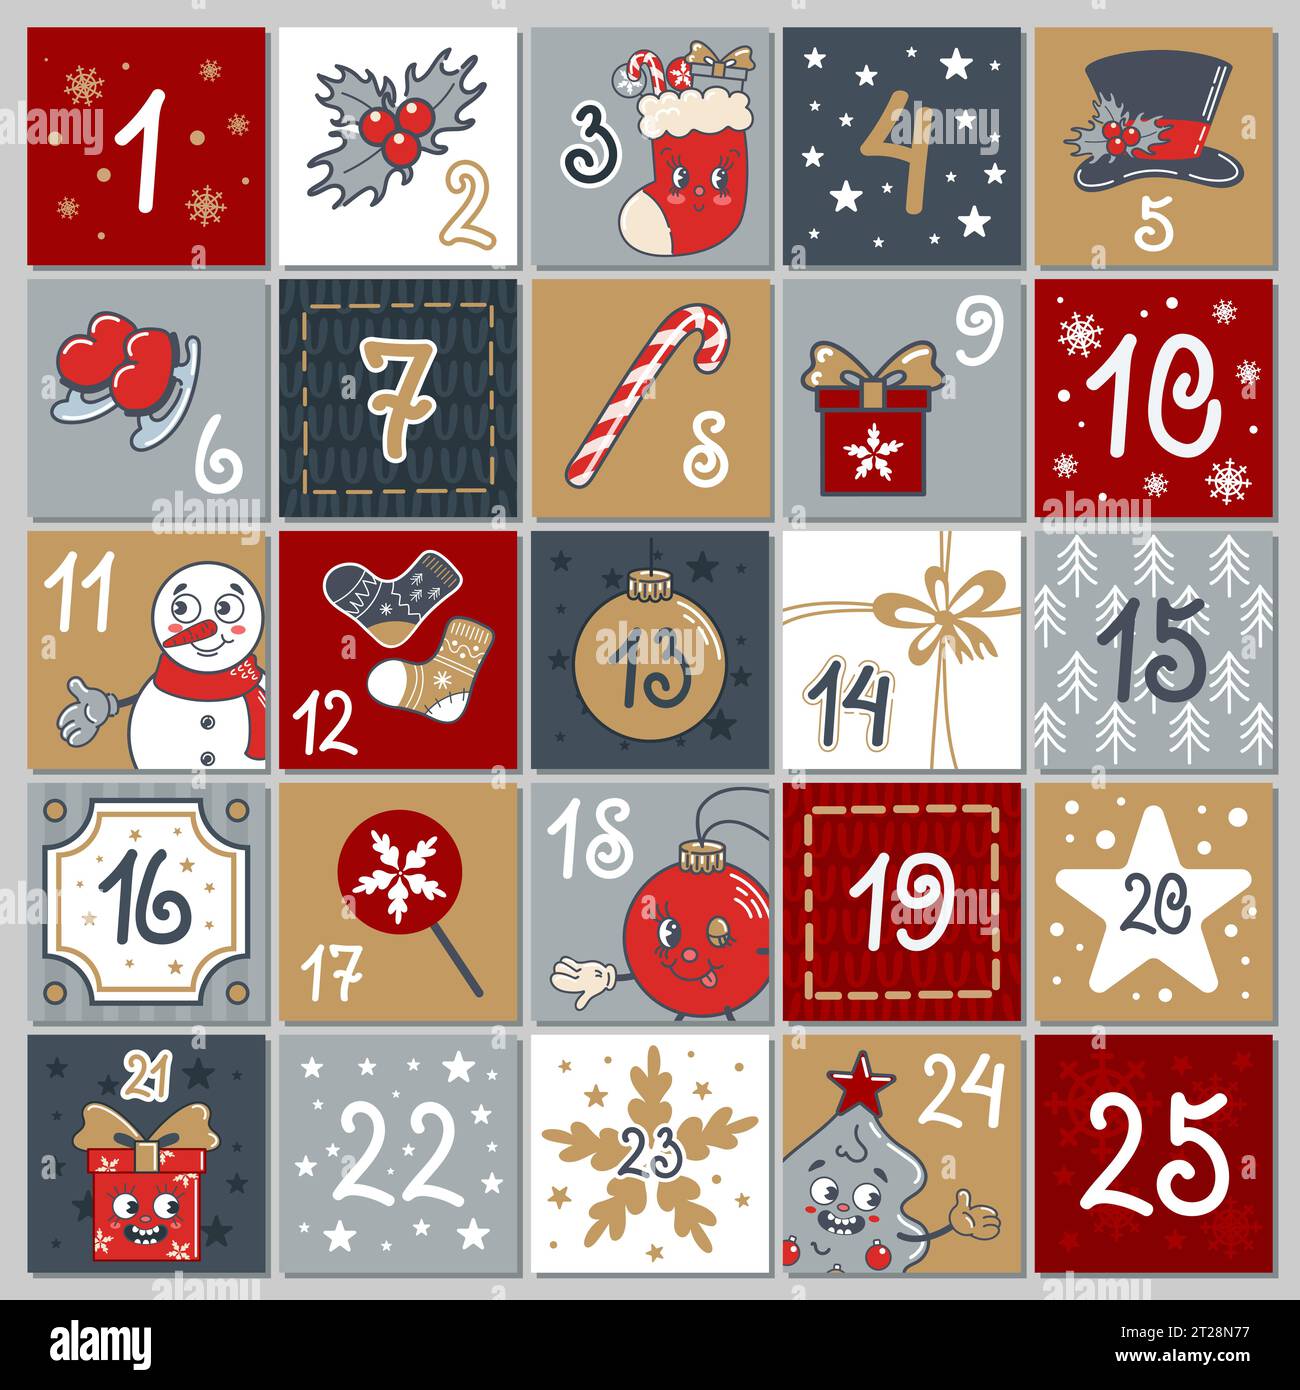 Carino calendario dell'avvento. 25 finestre con numeri. Pupazzo di neve, regalo di Natale, tazza di cioccolata calda, dolci, regali, canna da zucchero. Carino vecchio stile cartoni animati retrò Illustrazione Vettoriale